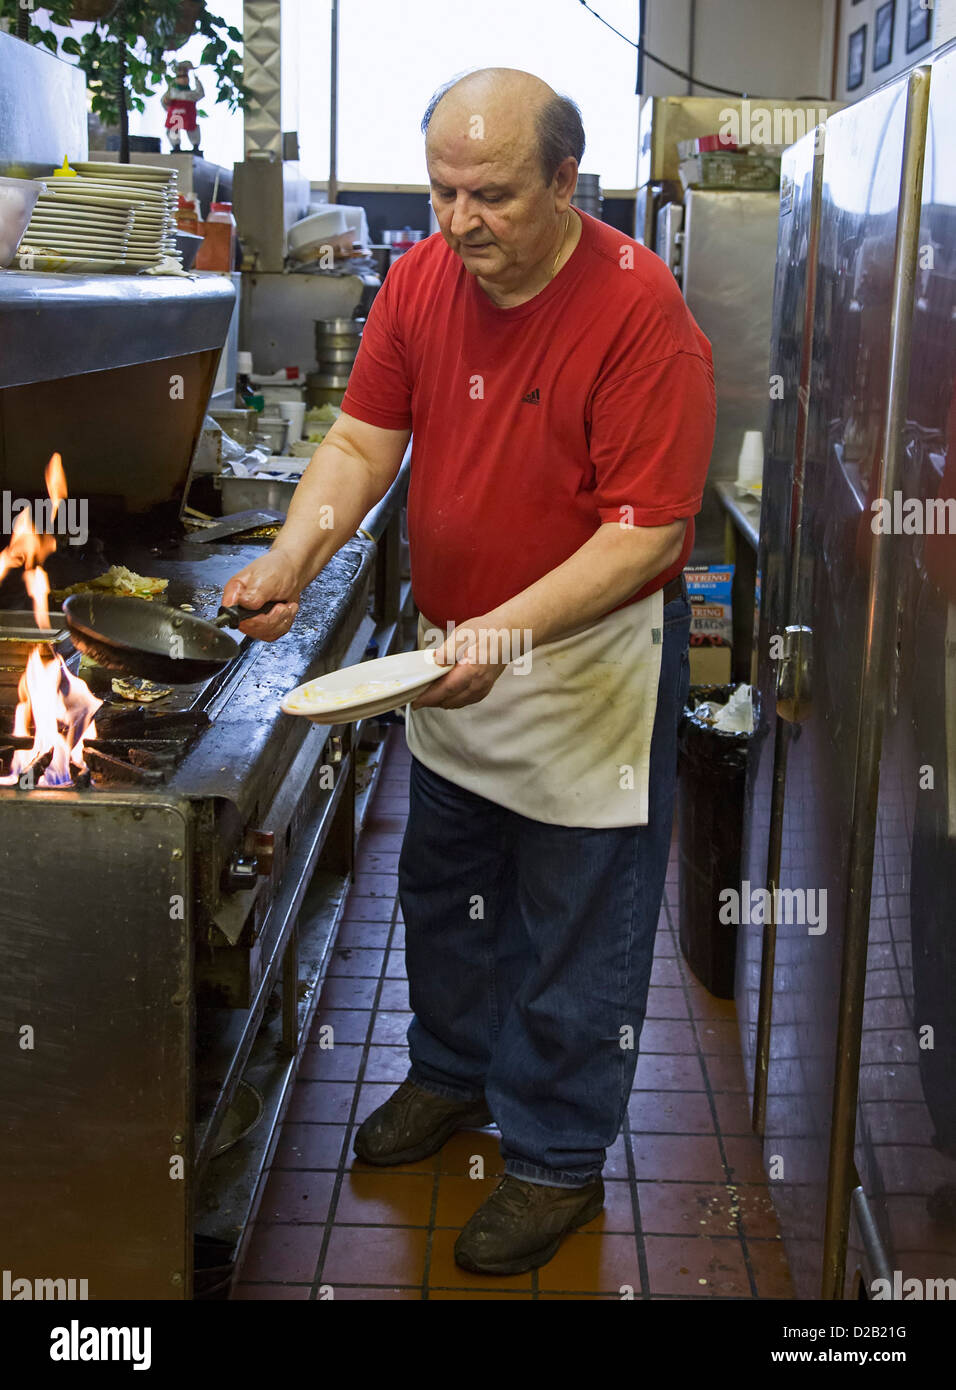 Detroit, Michigan - Il proprietario della bistecca Hut, un cucchiaio di grasso diner, fa le uova per un cliente di prima colazione. Foto Stock